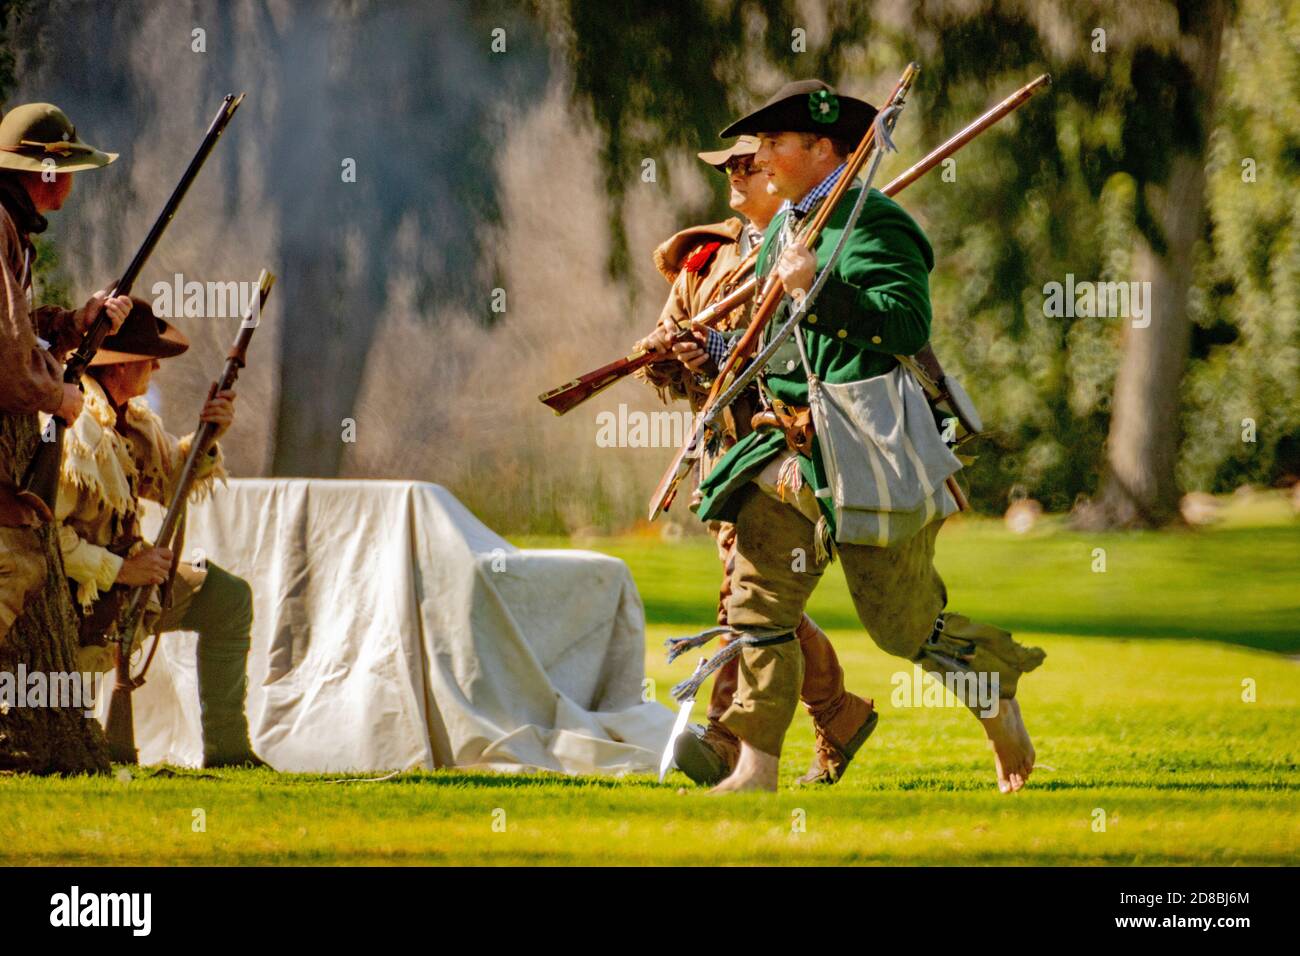 Los soldados rebeldes golpearon un retiro apresurado pero temporal en una recreación histórica de una batalla de la Guerra Revolucionaria Americana en un parque de Huntington Beach, CA. Foto de stock